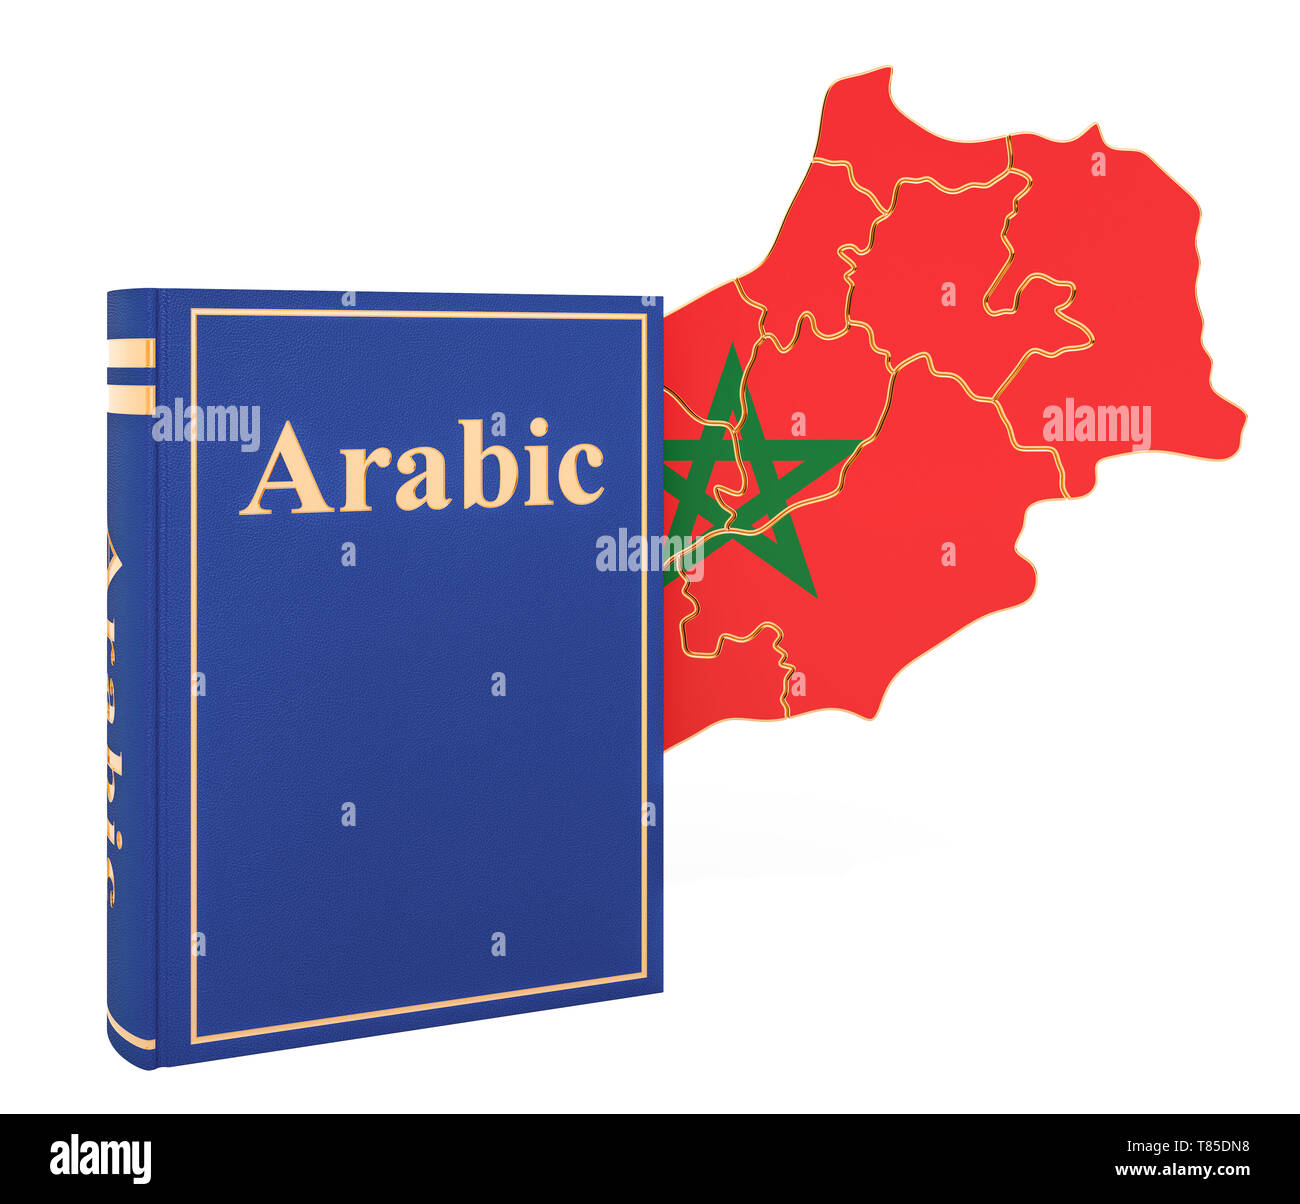 Arabische Sprache Buch mit Karte von Marokko, 3D-Rendering auf weißem Hintergrund Stockfoto